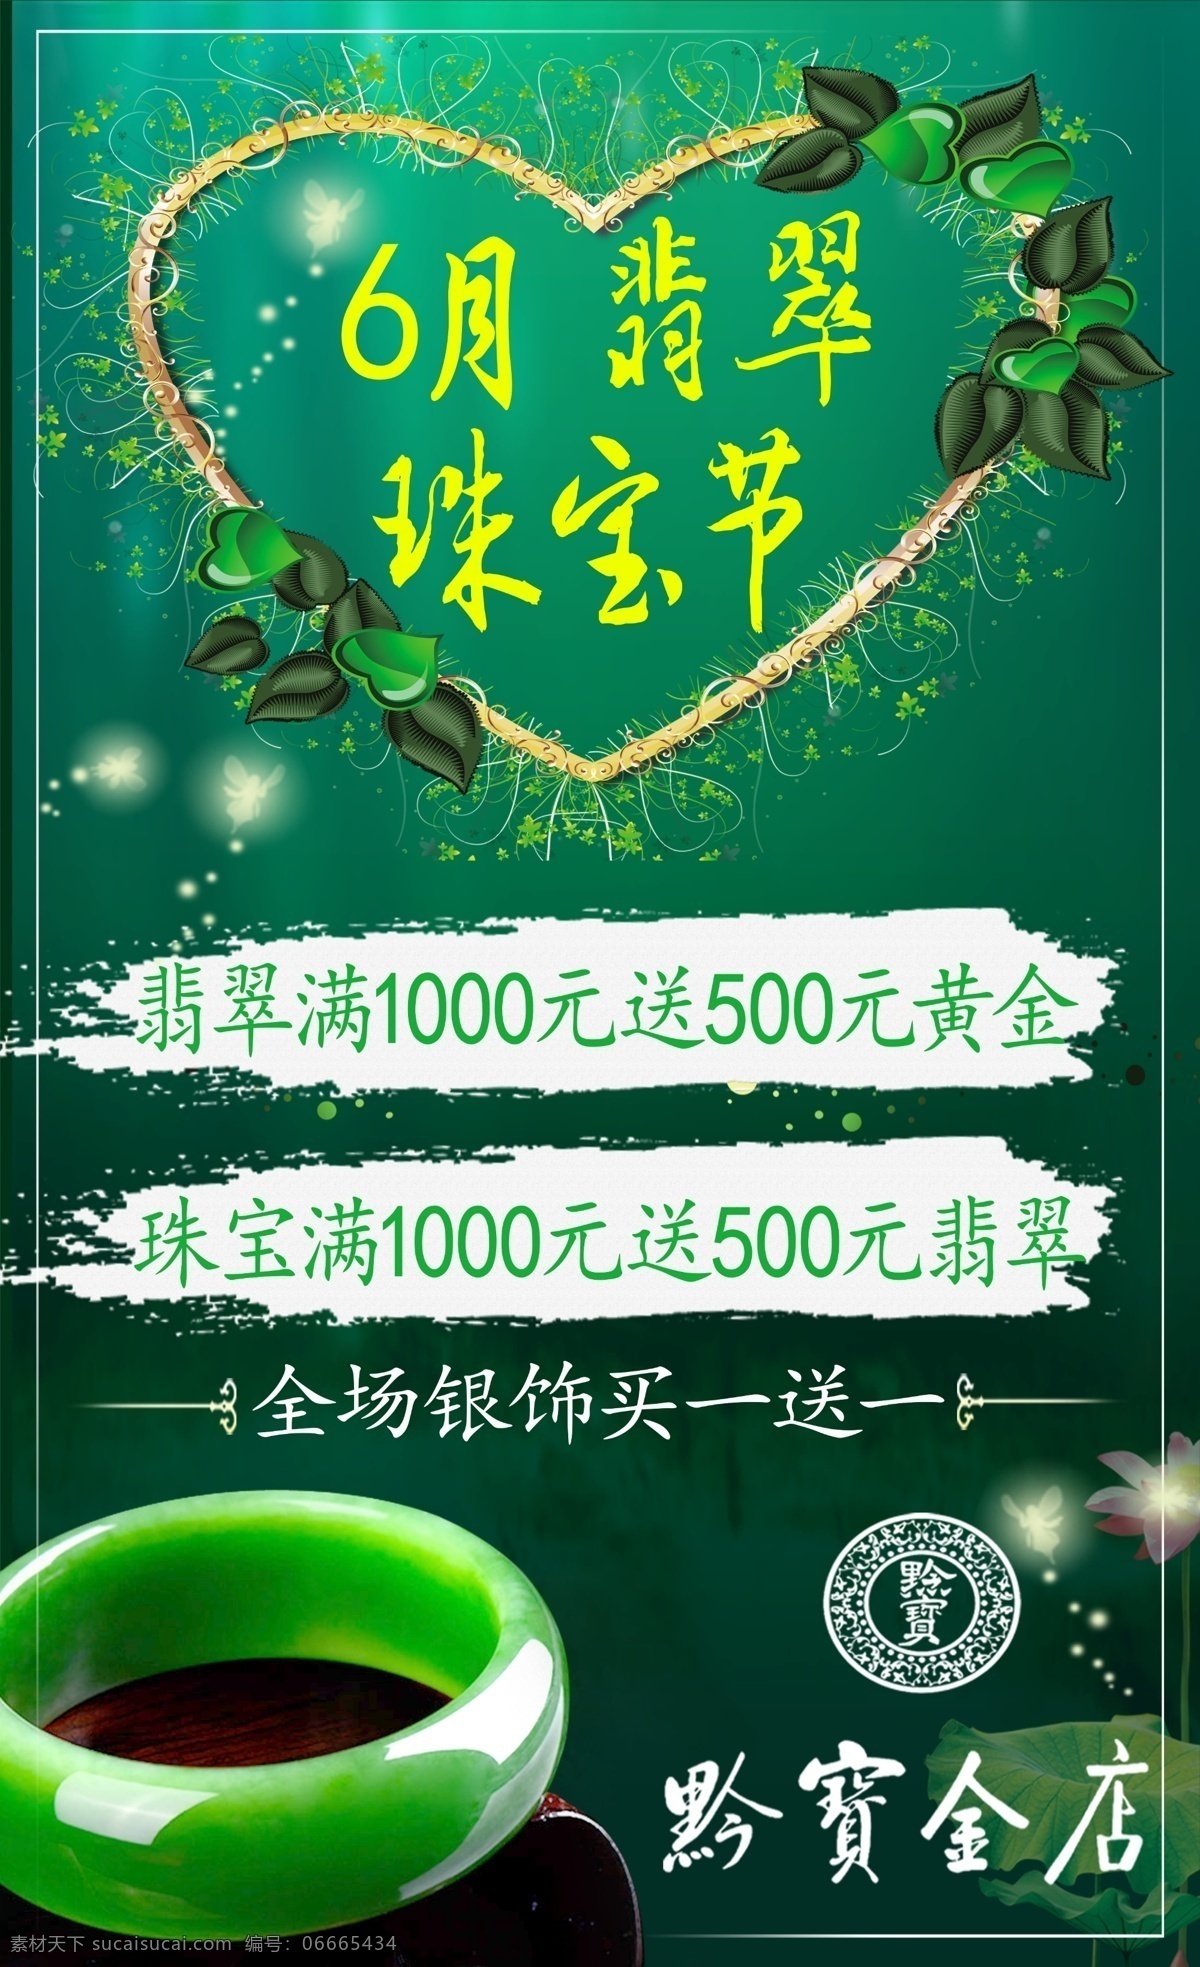 翡翠珠宝节 翡翠珠宝 翡翠 绿色海报 绿色背景 翡翠素材 绿色翡翠 翡翠文化节